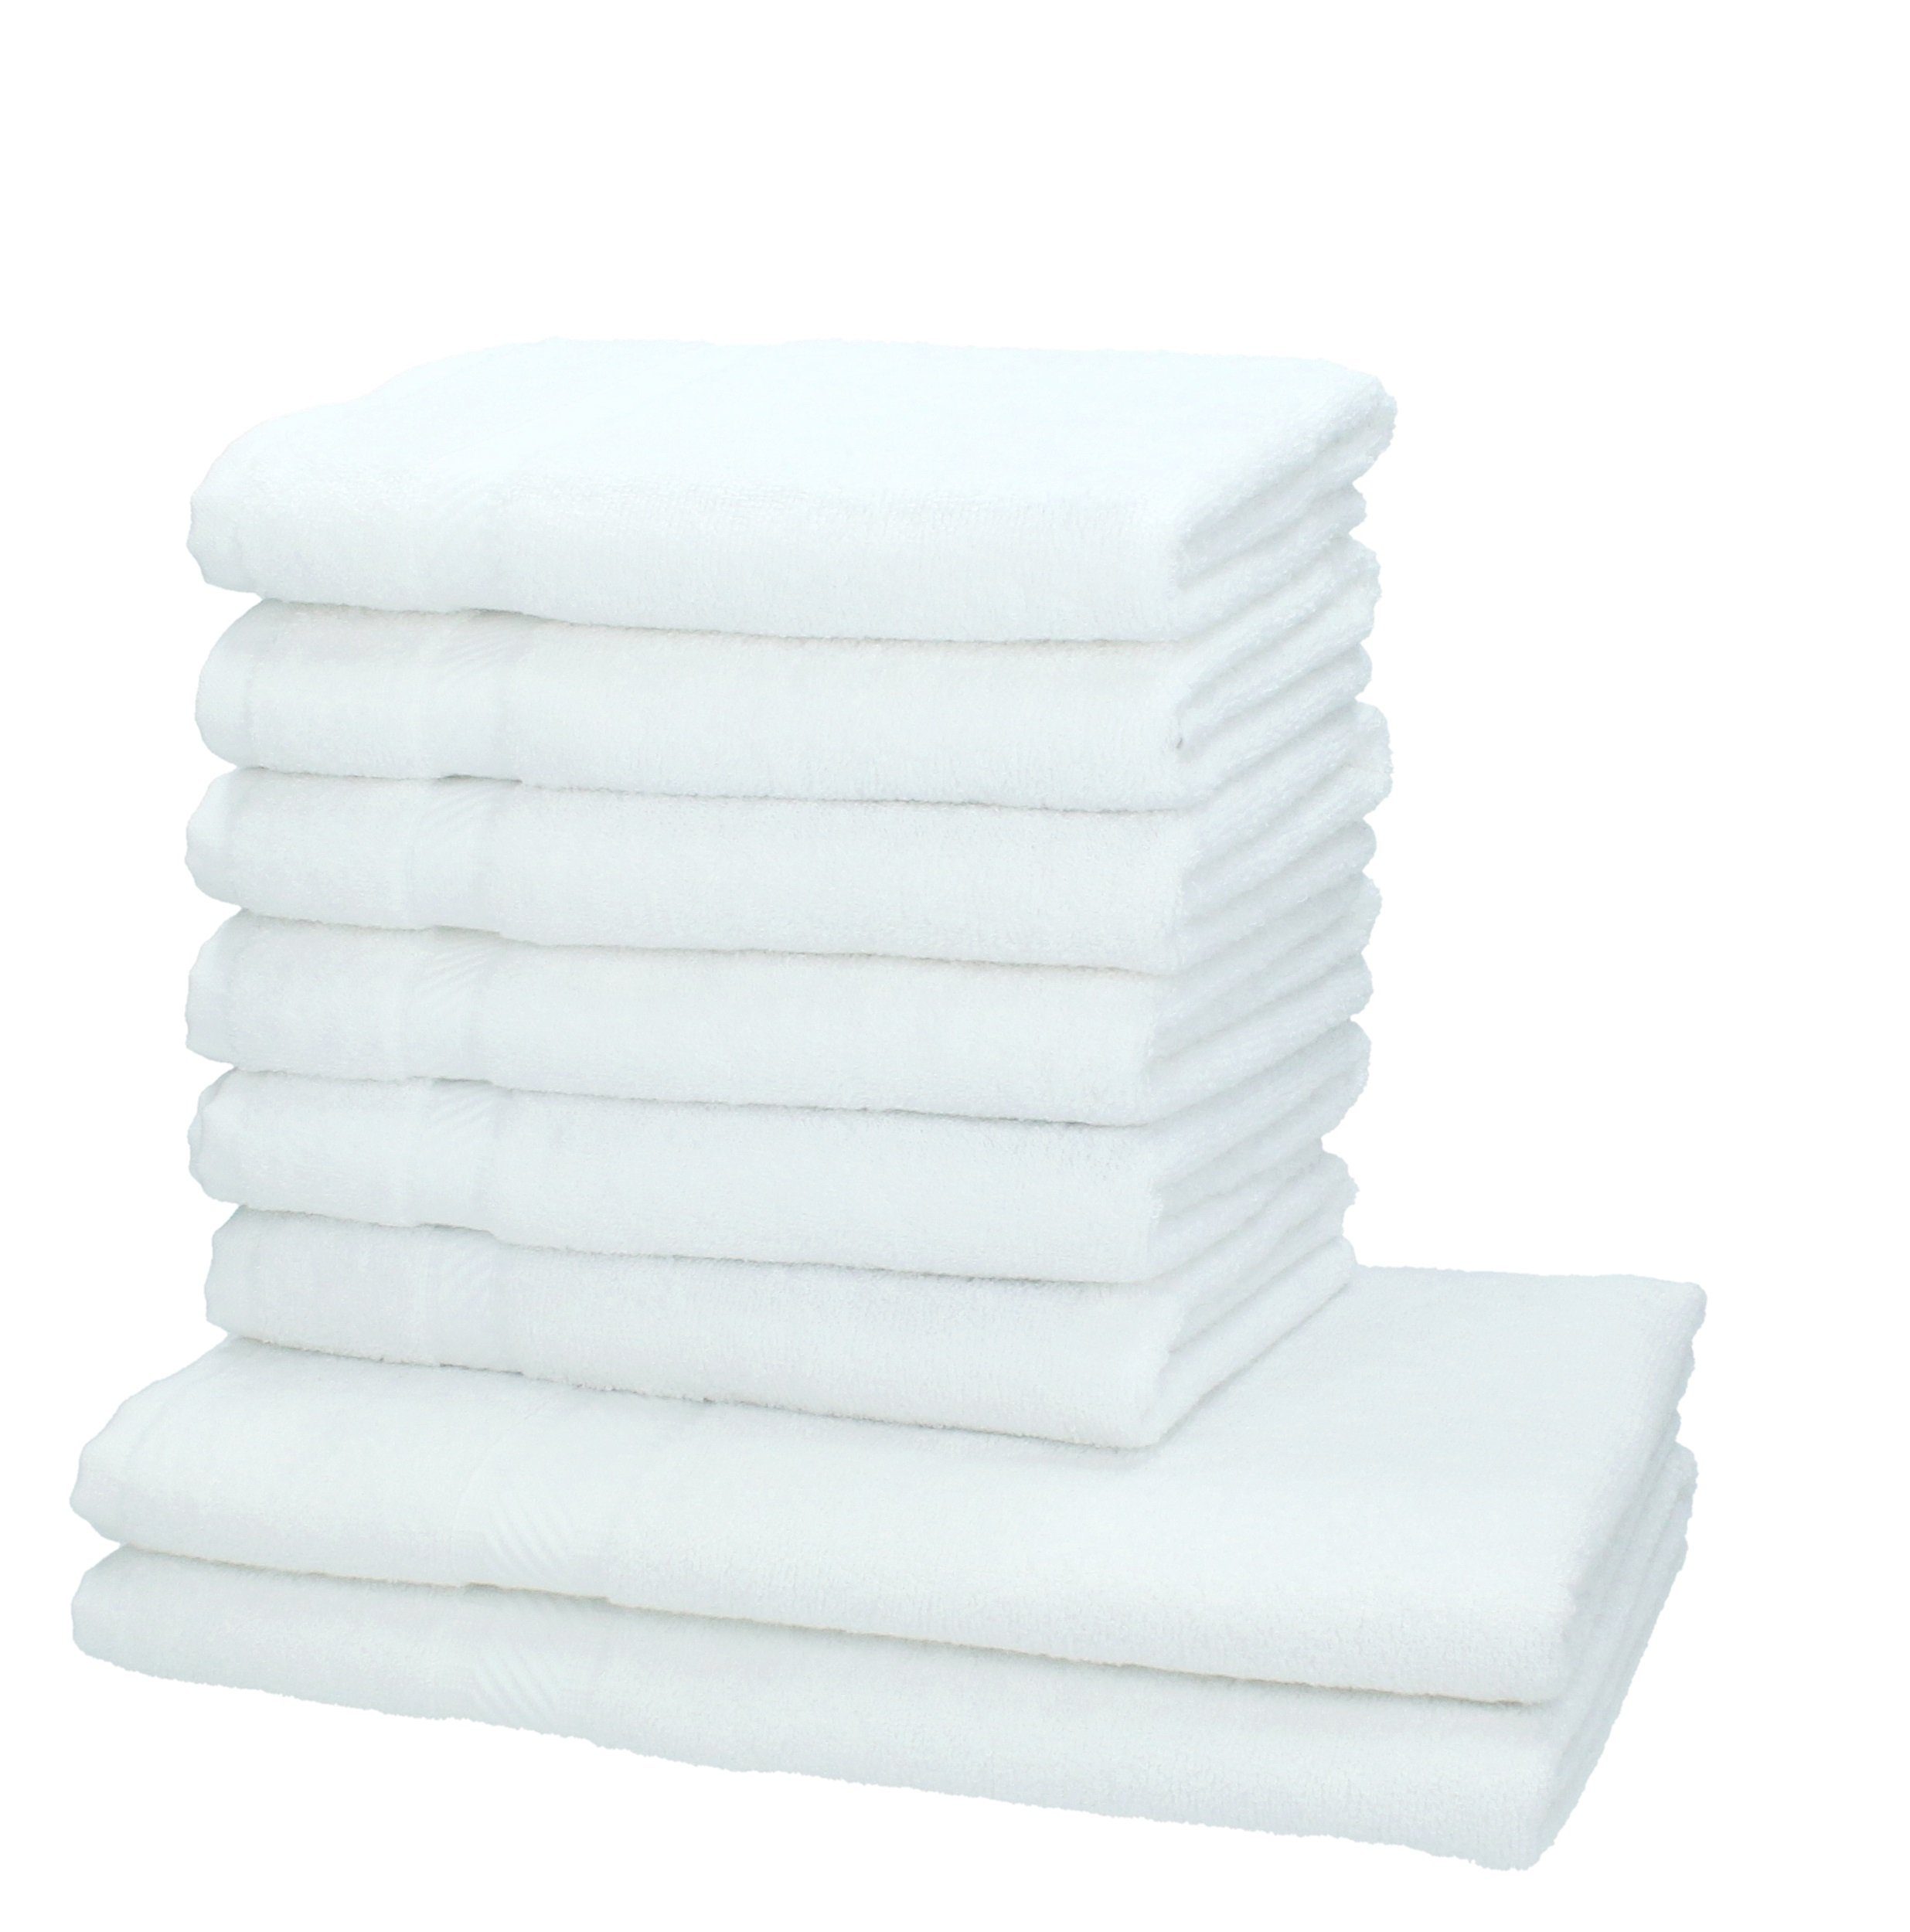 Betz Handtuch 100% Farbe 8-tlg. weiß, Palermo Set Baumwolle Handtuch-Set